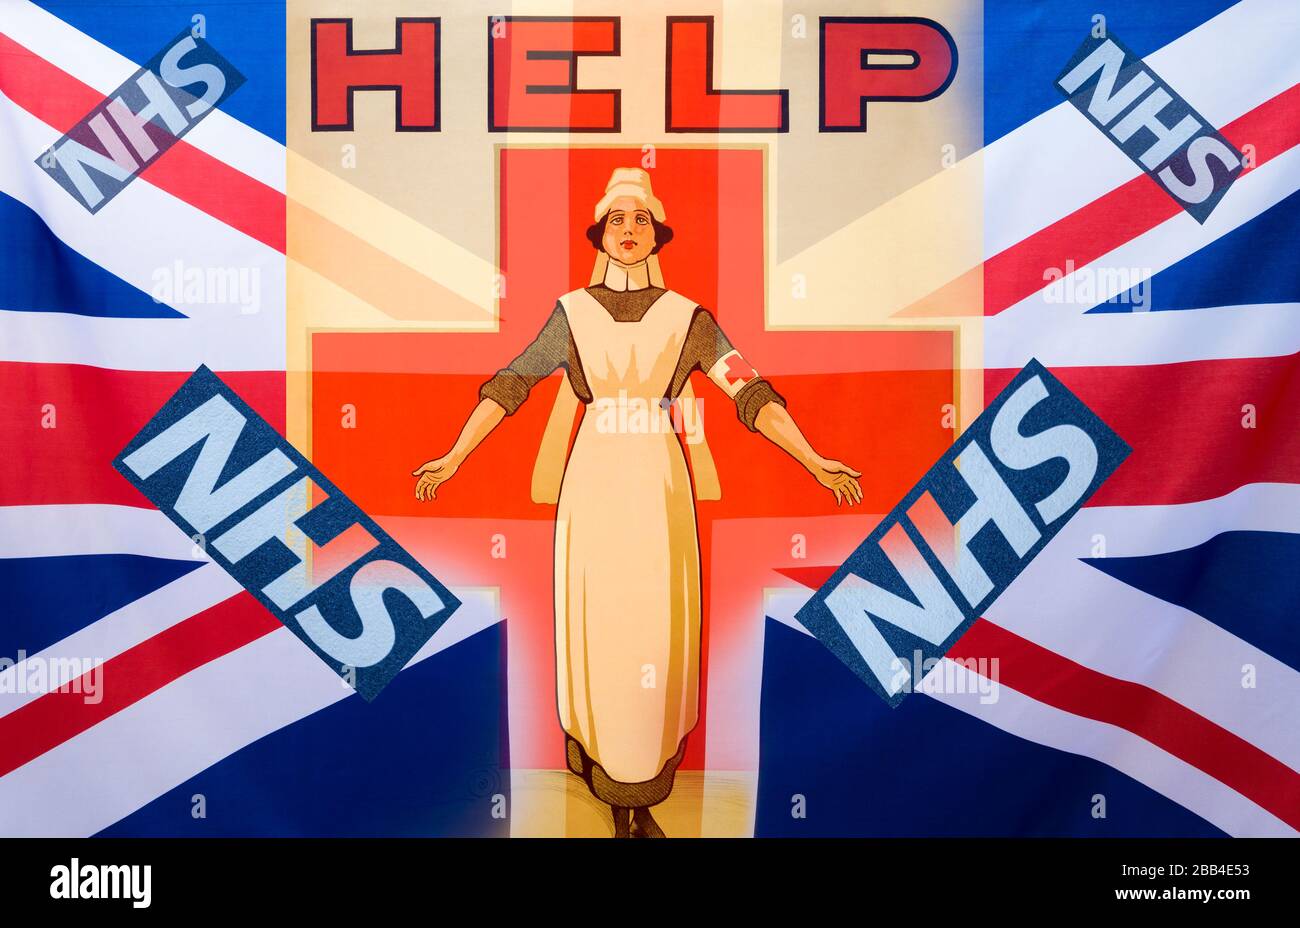 Imagen del logotipo de la enfermera y del NHS (National Health Service) mezclado con la bandera de la Union Jack del Reino Unido. Enfermera, escasez de enfermeras, financiación del NHS, Coronavirus... Concepto Foto de stock